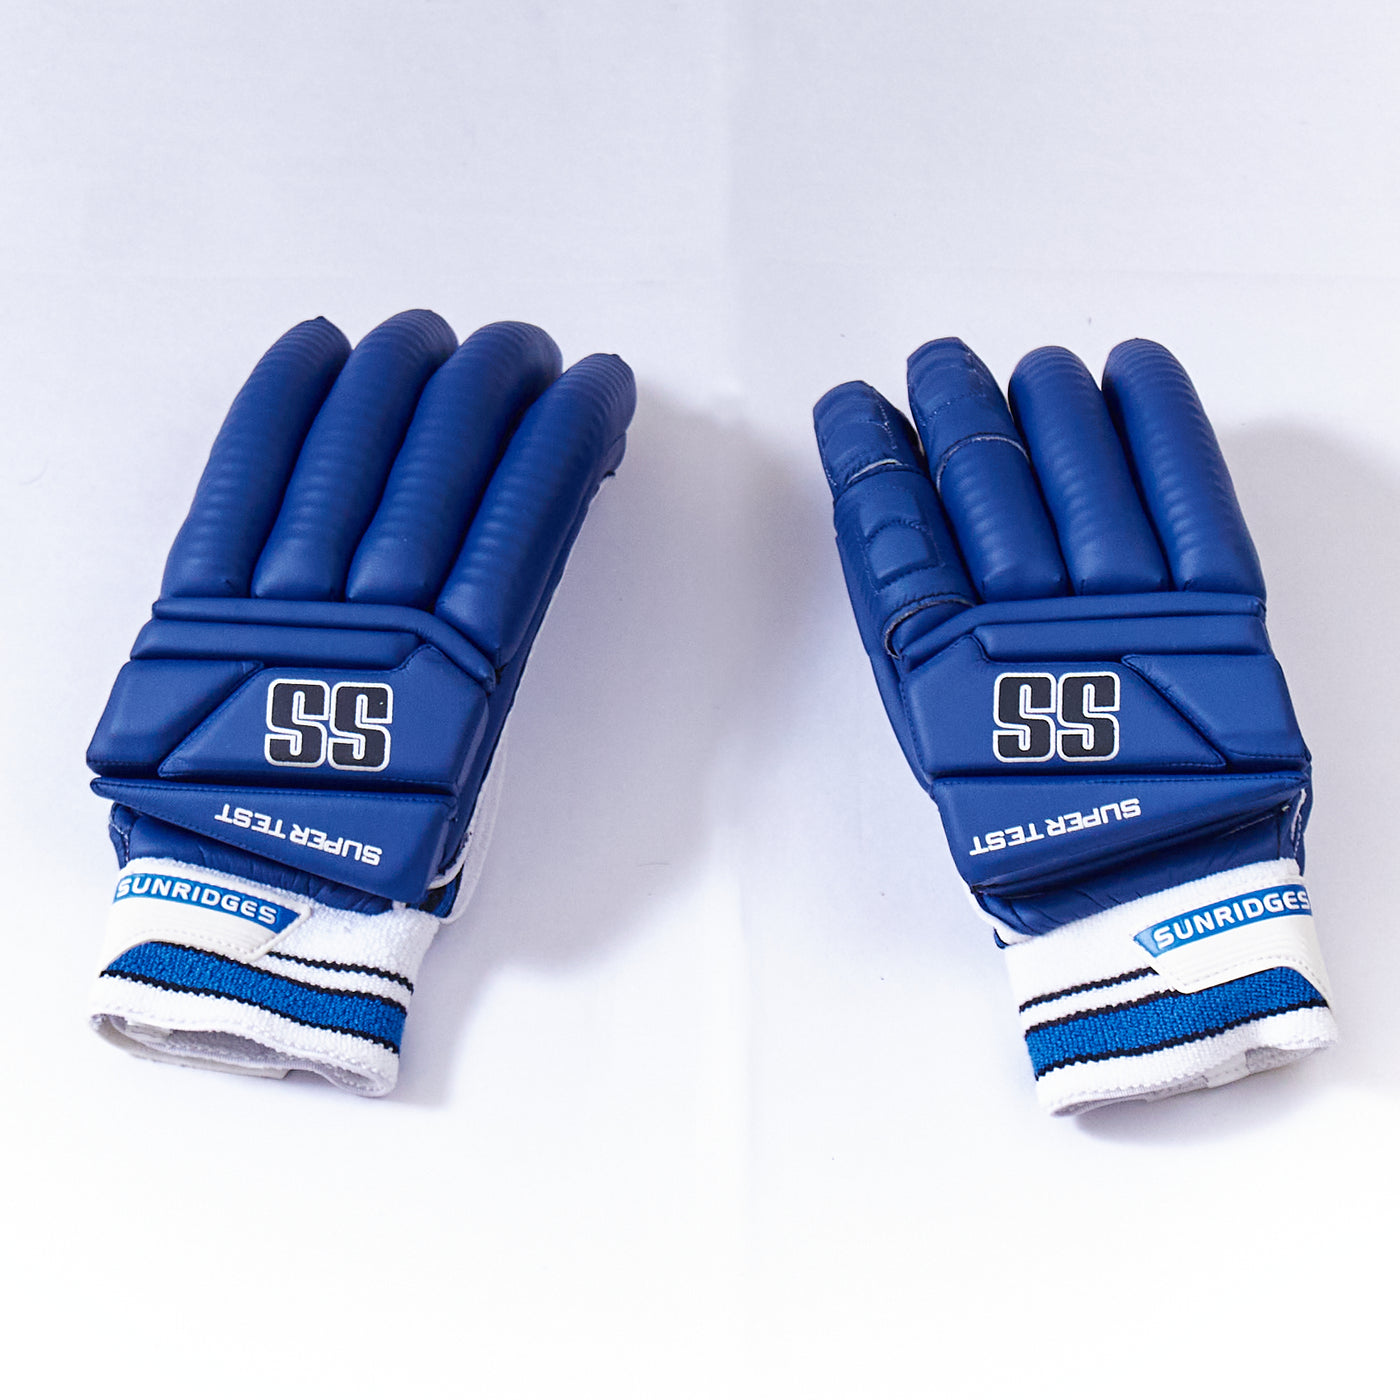 SS Super Test Blue Batting Gloves